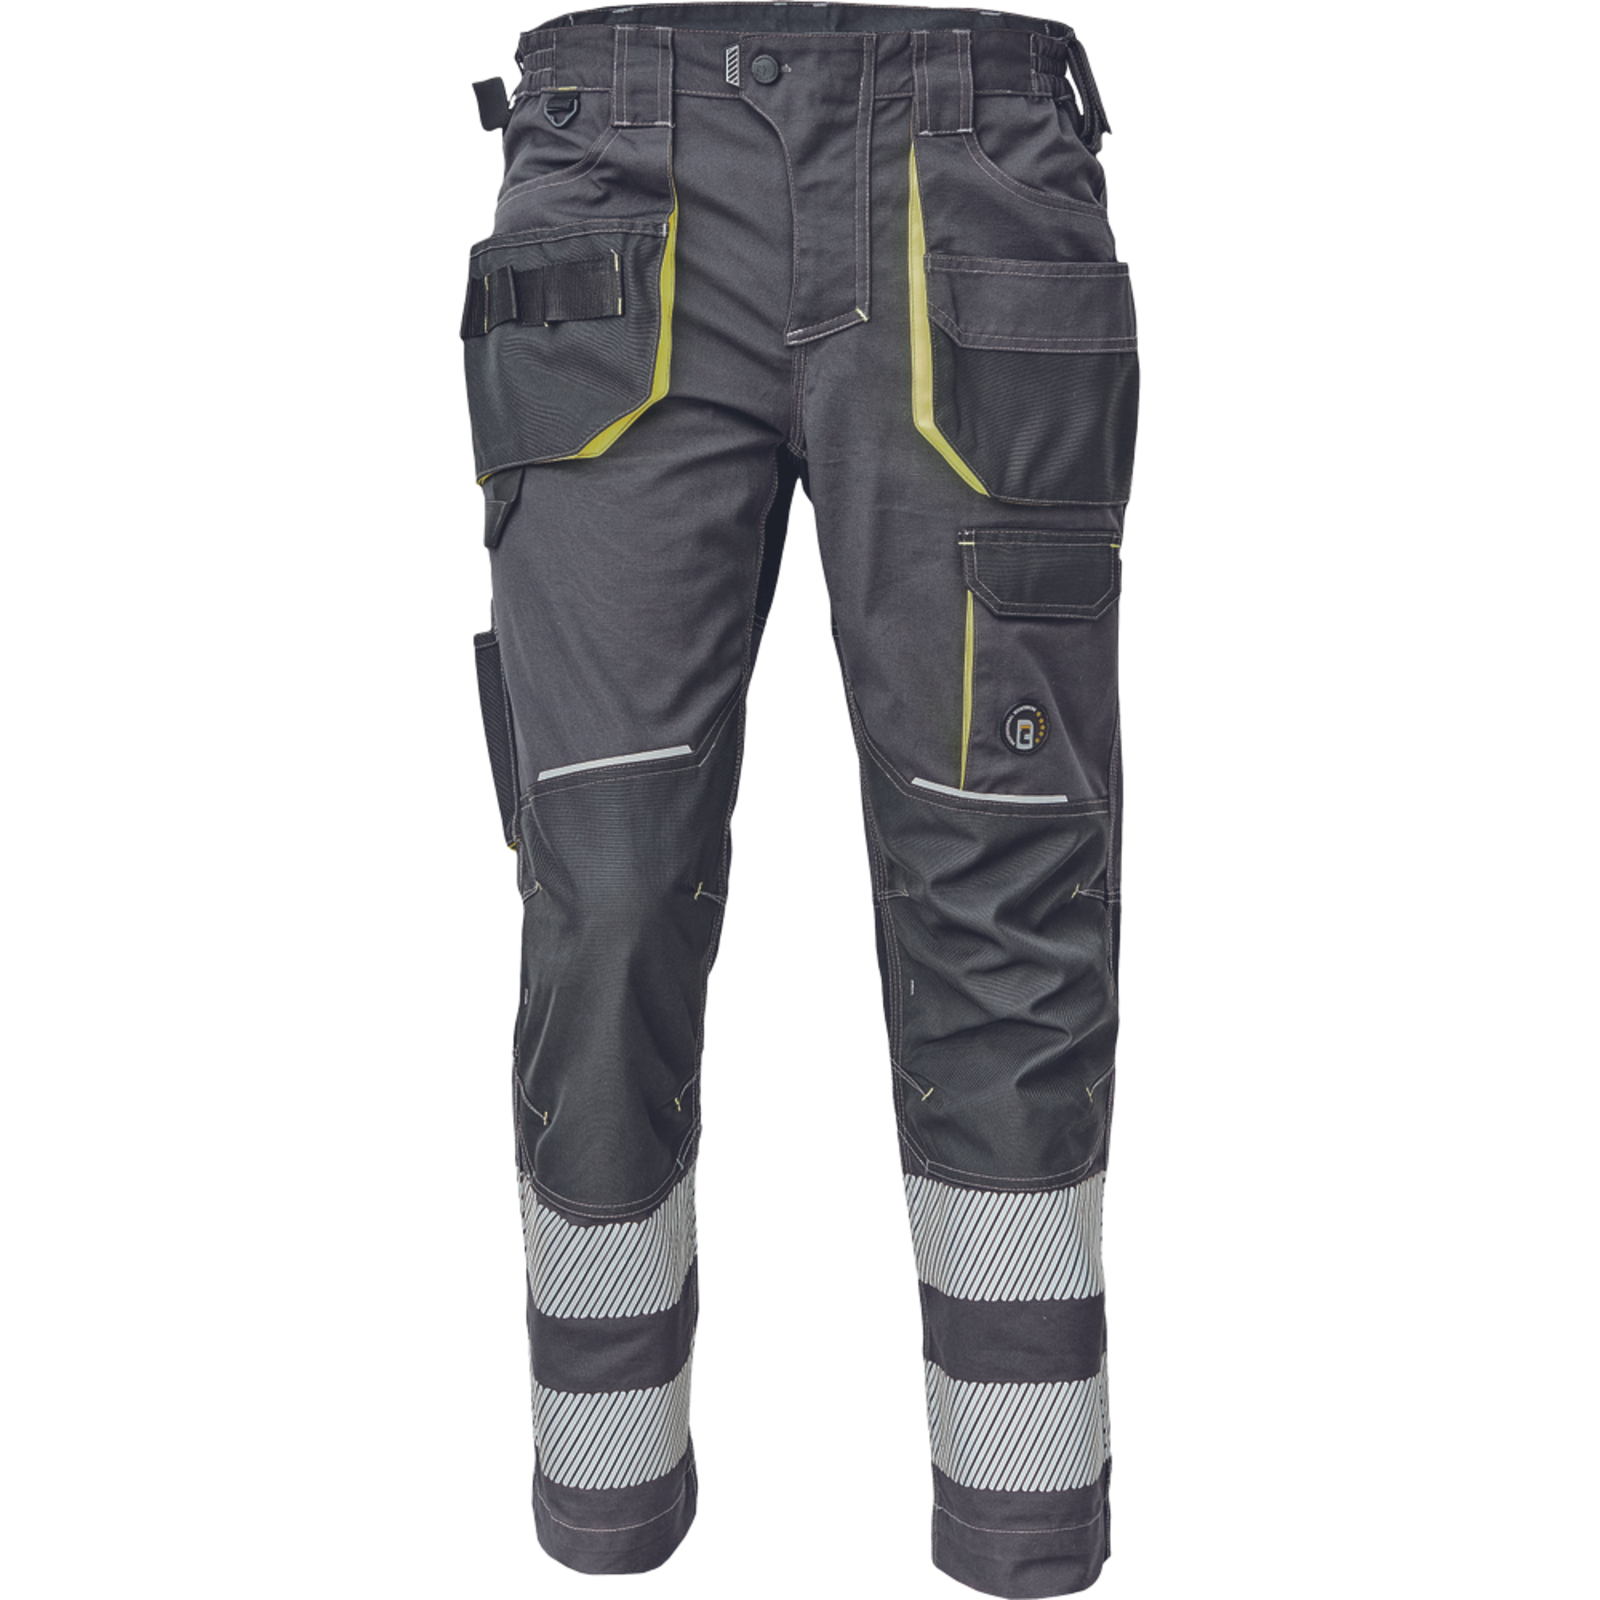 Pracovné nohavice s reflexnými pruhmi Cerva Sheldon RFLX pánske - veľkosť: 66, farba: antracit/žltá